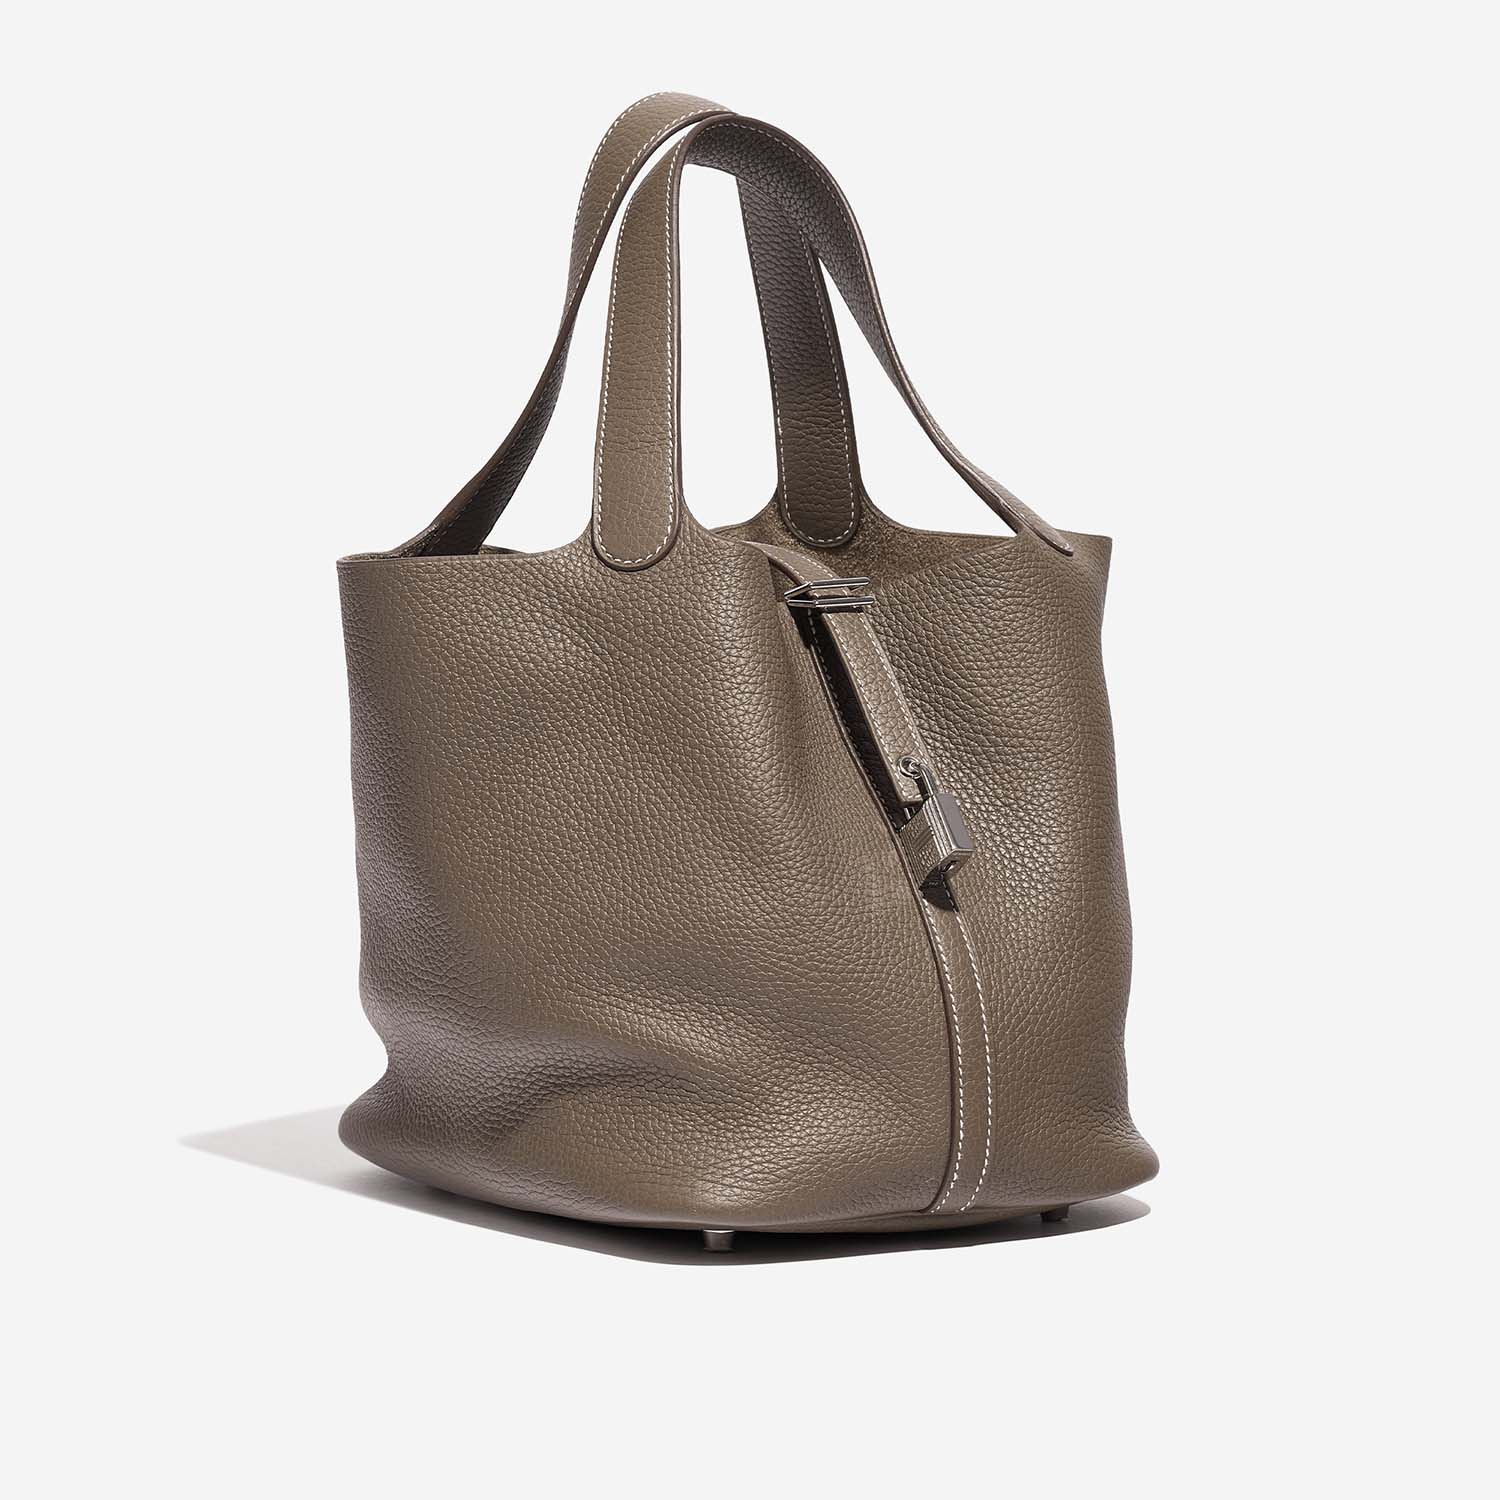 Hermès Picotin 22 Etoupe Side Front | Verkaufen Sie Ihre Designer-Tasche auf Saclab.com